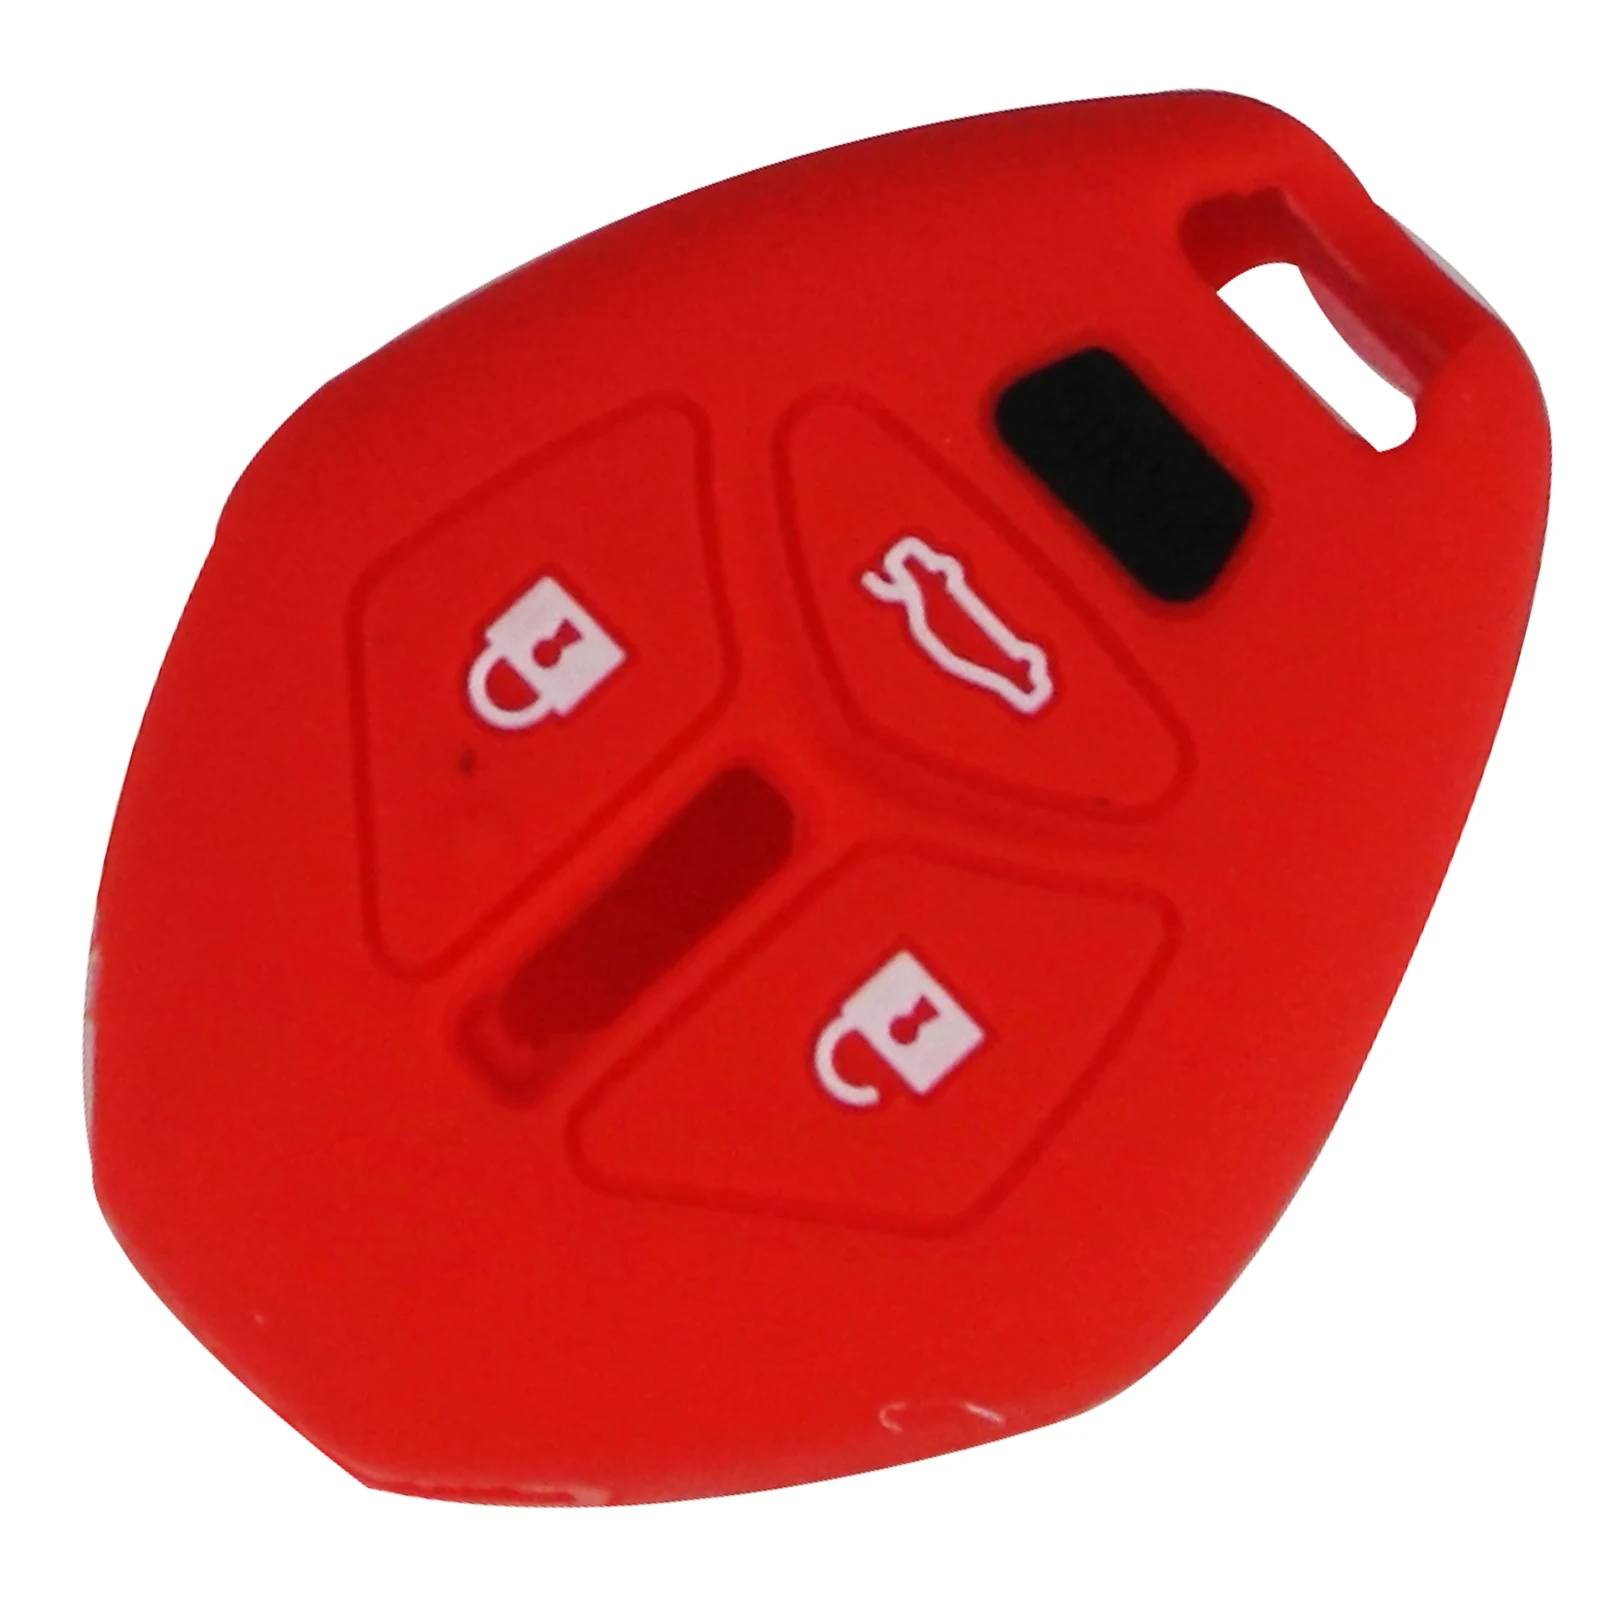 30 шт./партия силиконовый чехол для ключей для Mitsubishi Lancer Evo Outlander Galant Endeavor Mirage 4 кнопки дистанционного ключа - Название цвета: Красный